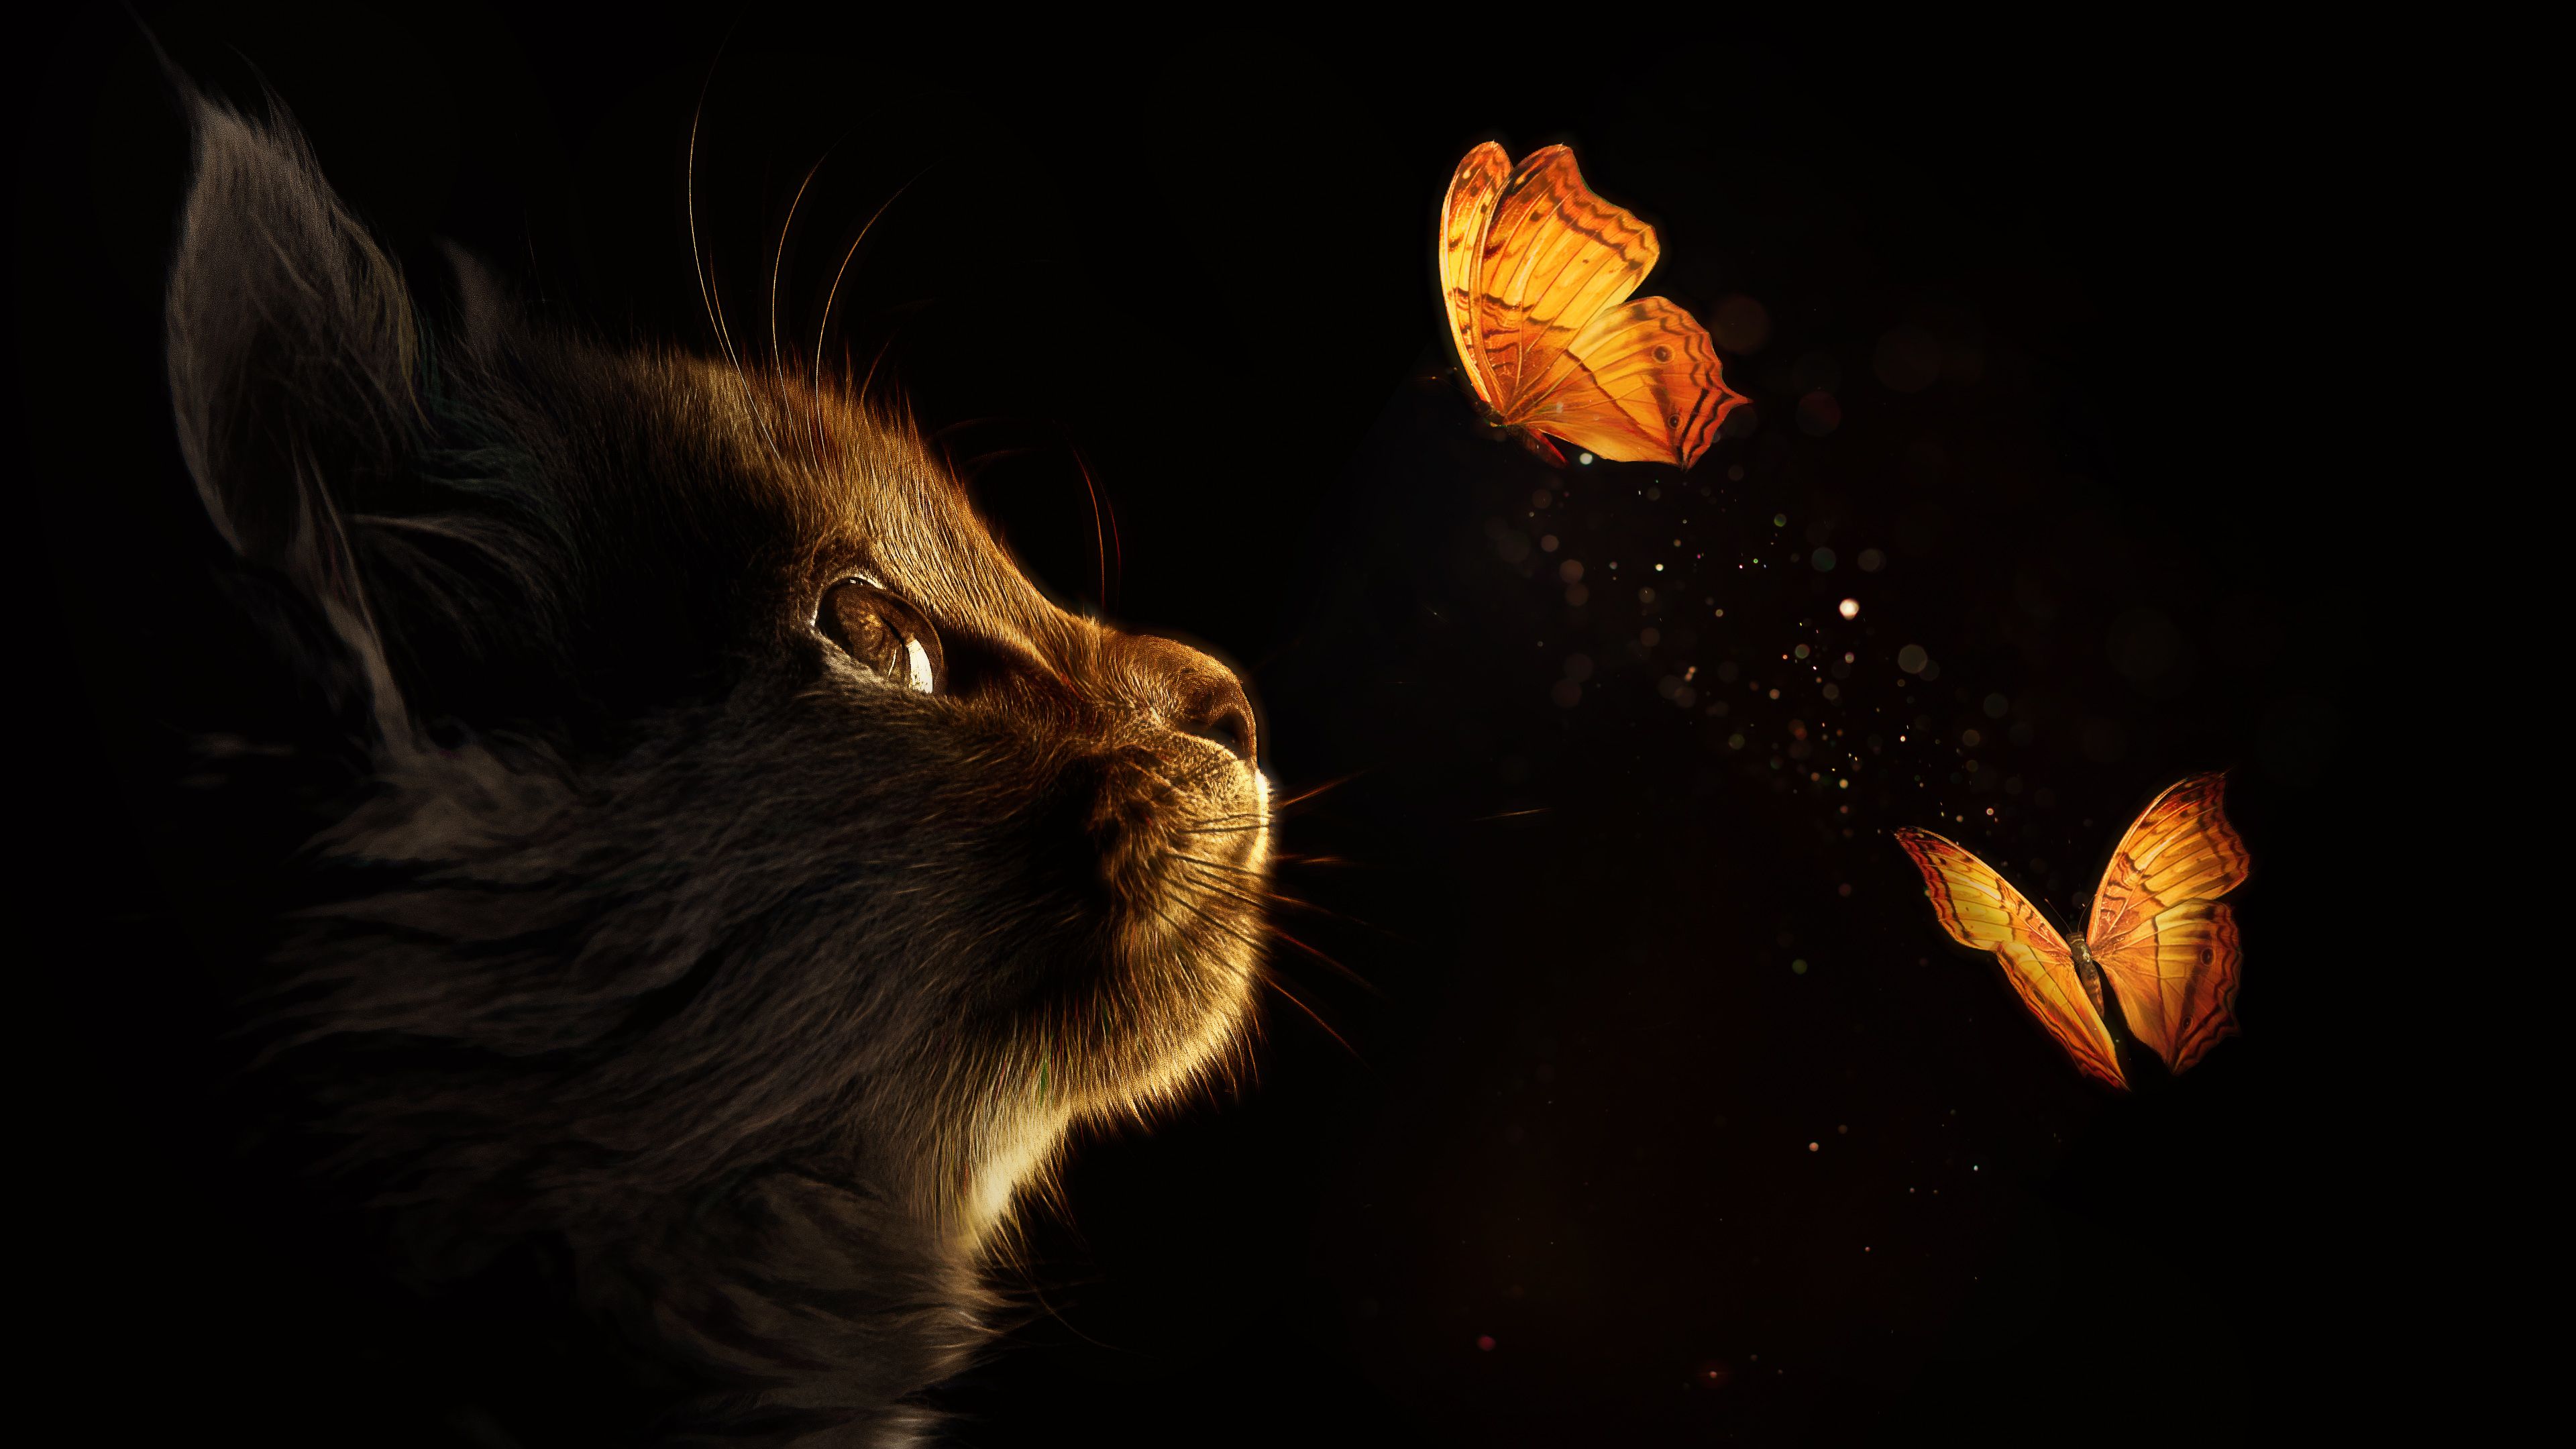 Kitten 4K Wallpaper, Cat, Butterflies, Black background, Glowing, Manipulation, Closeup, Animals